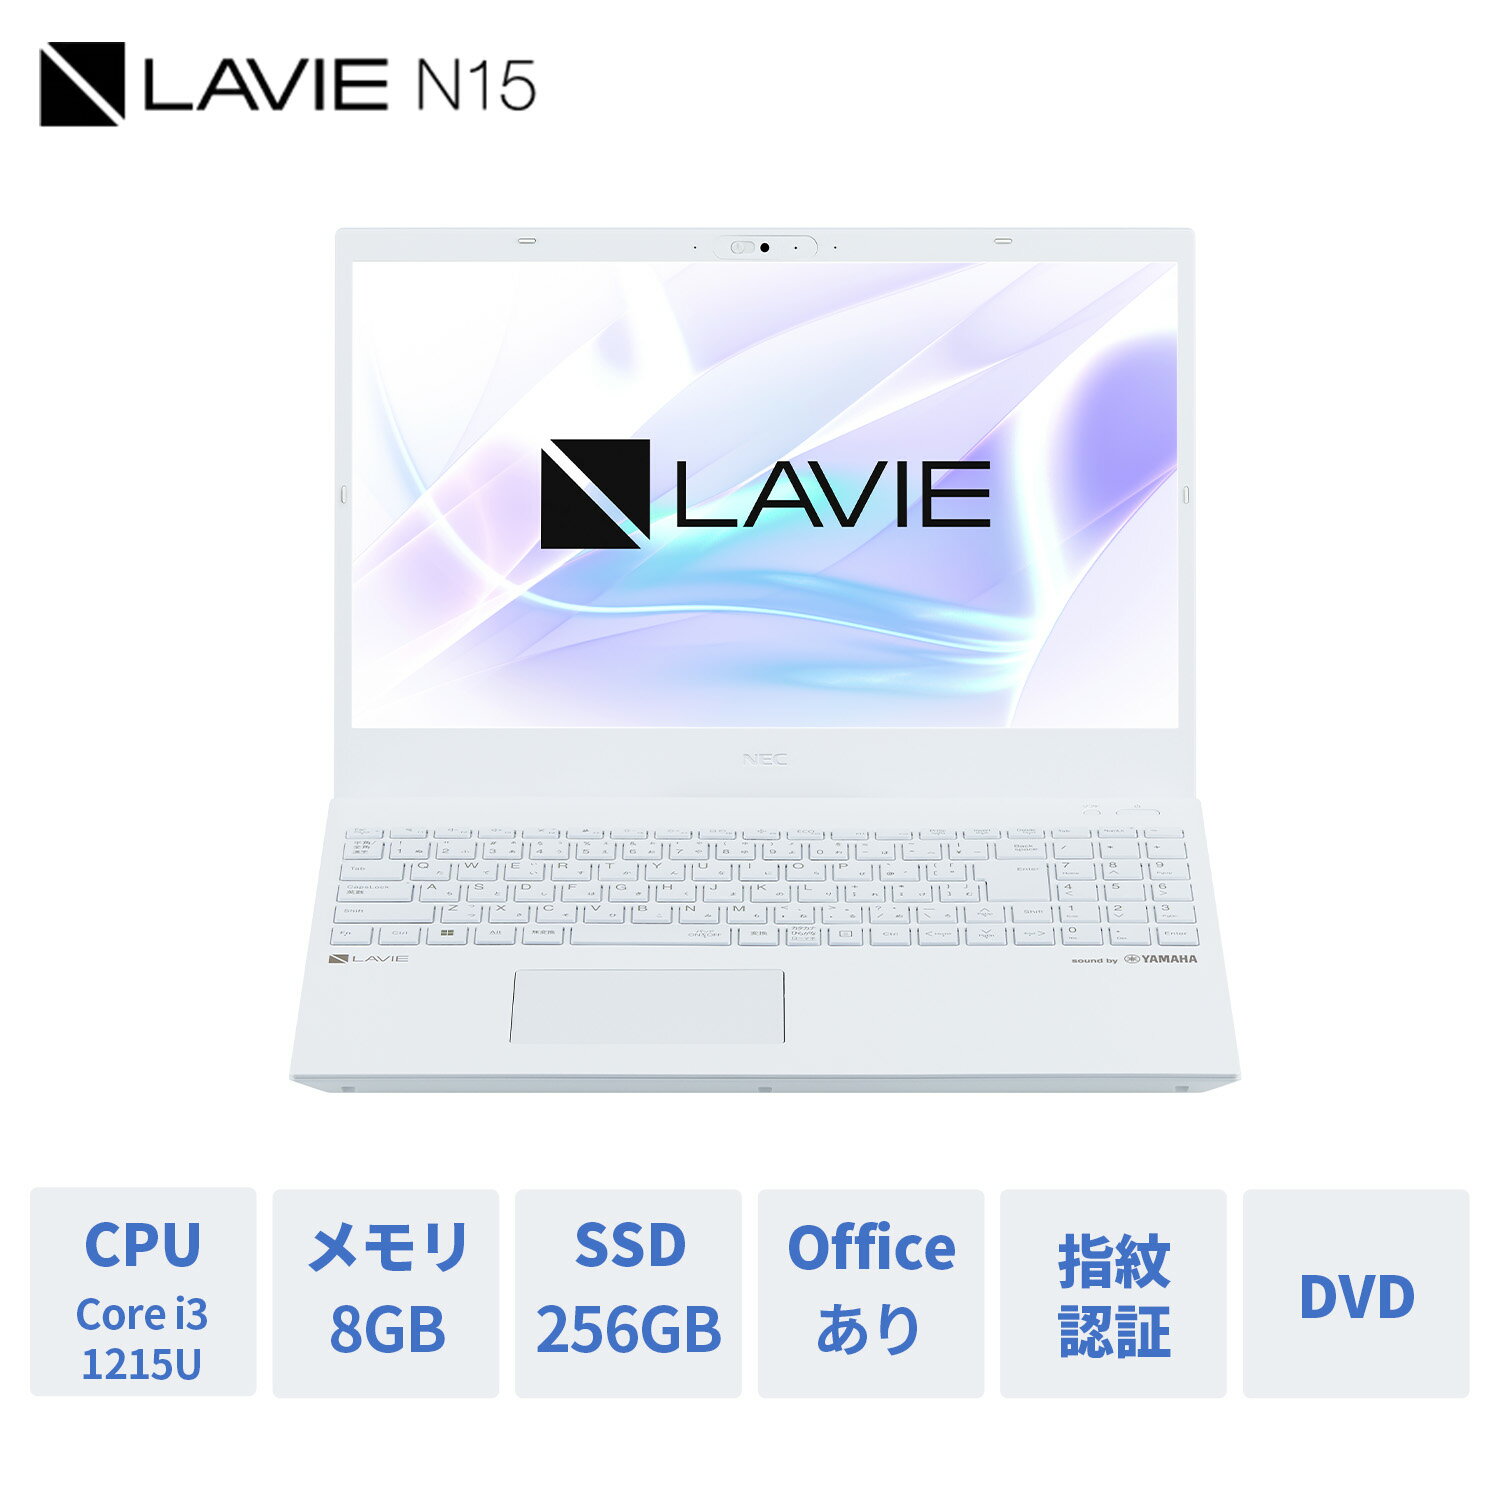 【Norton1】【DEAL10 】【14,000円OFFクーポン】【公式】 新品第12世代 NEC ノートパソコン office付き LAVIE Direct N15 15.6インチ Windows 11 Home Core i3-1215U メモリ 8GB 256GB SSD 1年保証 送料無料 yxe